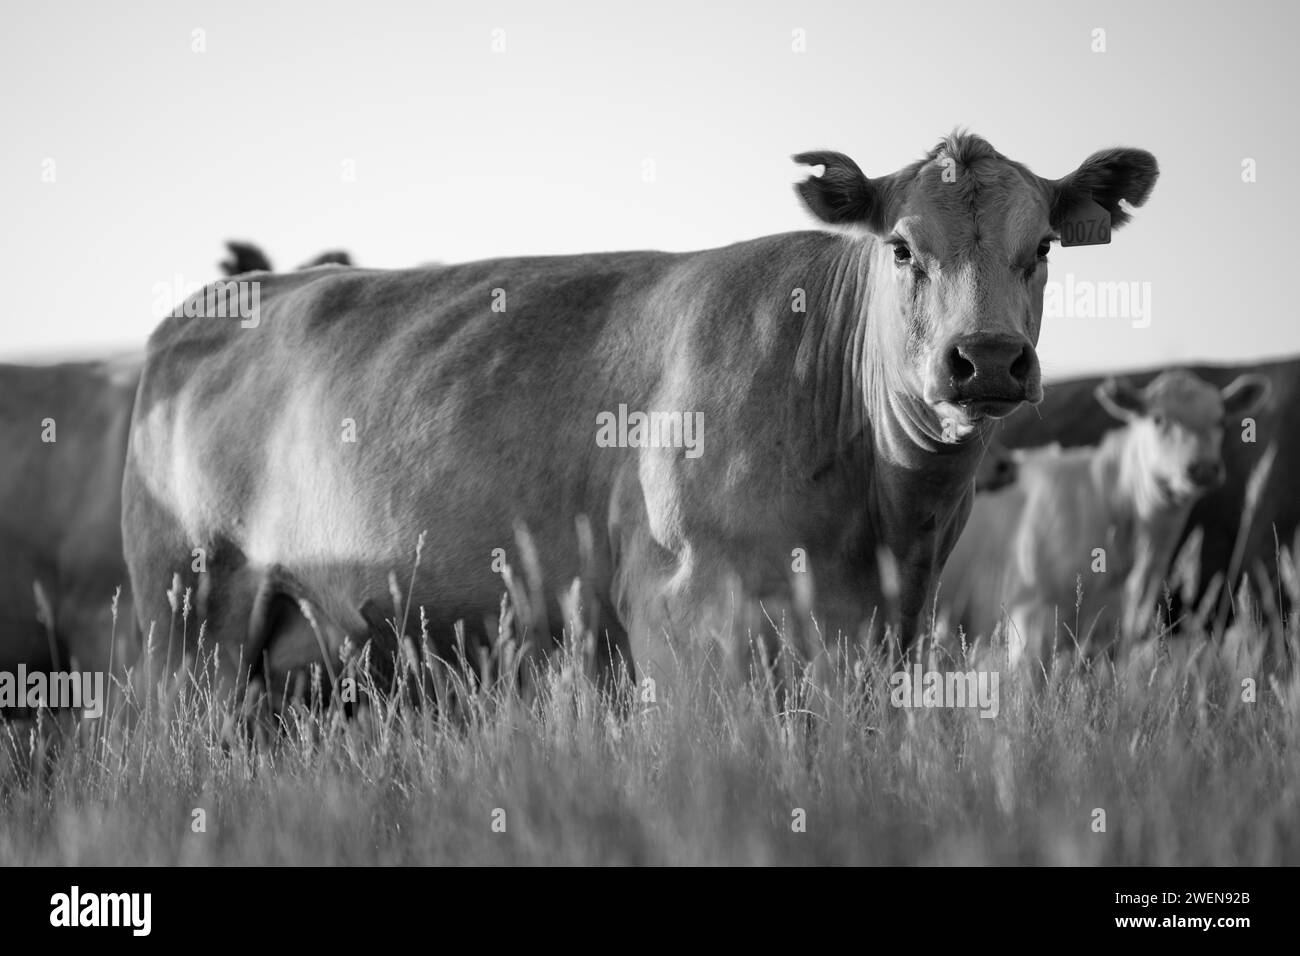 Élevage holistique de vaches Angus, wagyu et Murray Grey mangeant de longs pâturages dans un été chaud et sec au crépuscule en Australie Banque D'Images